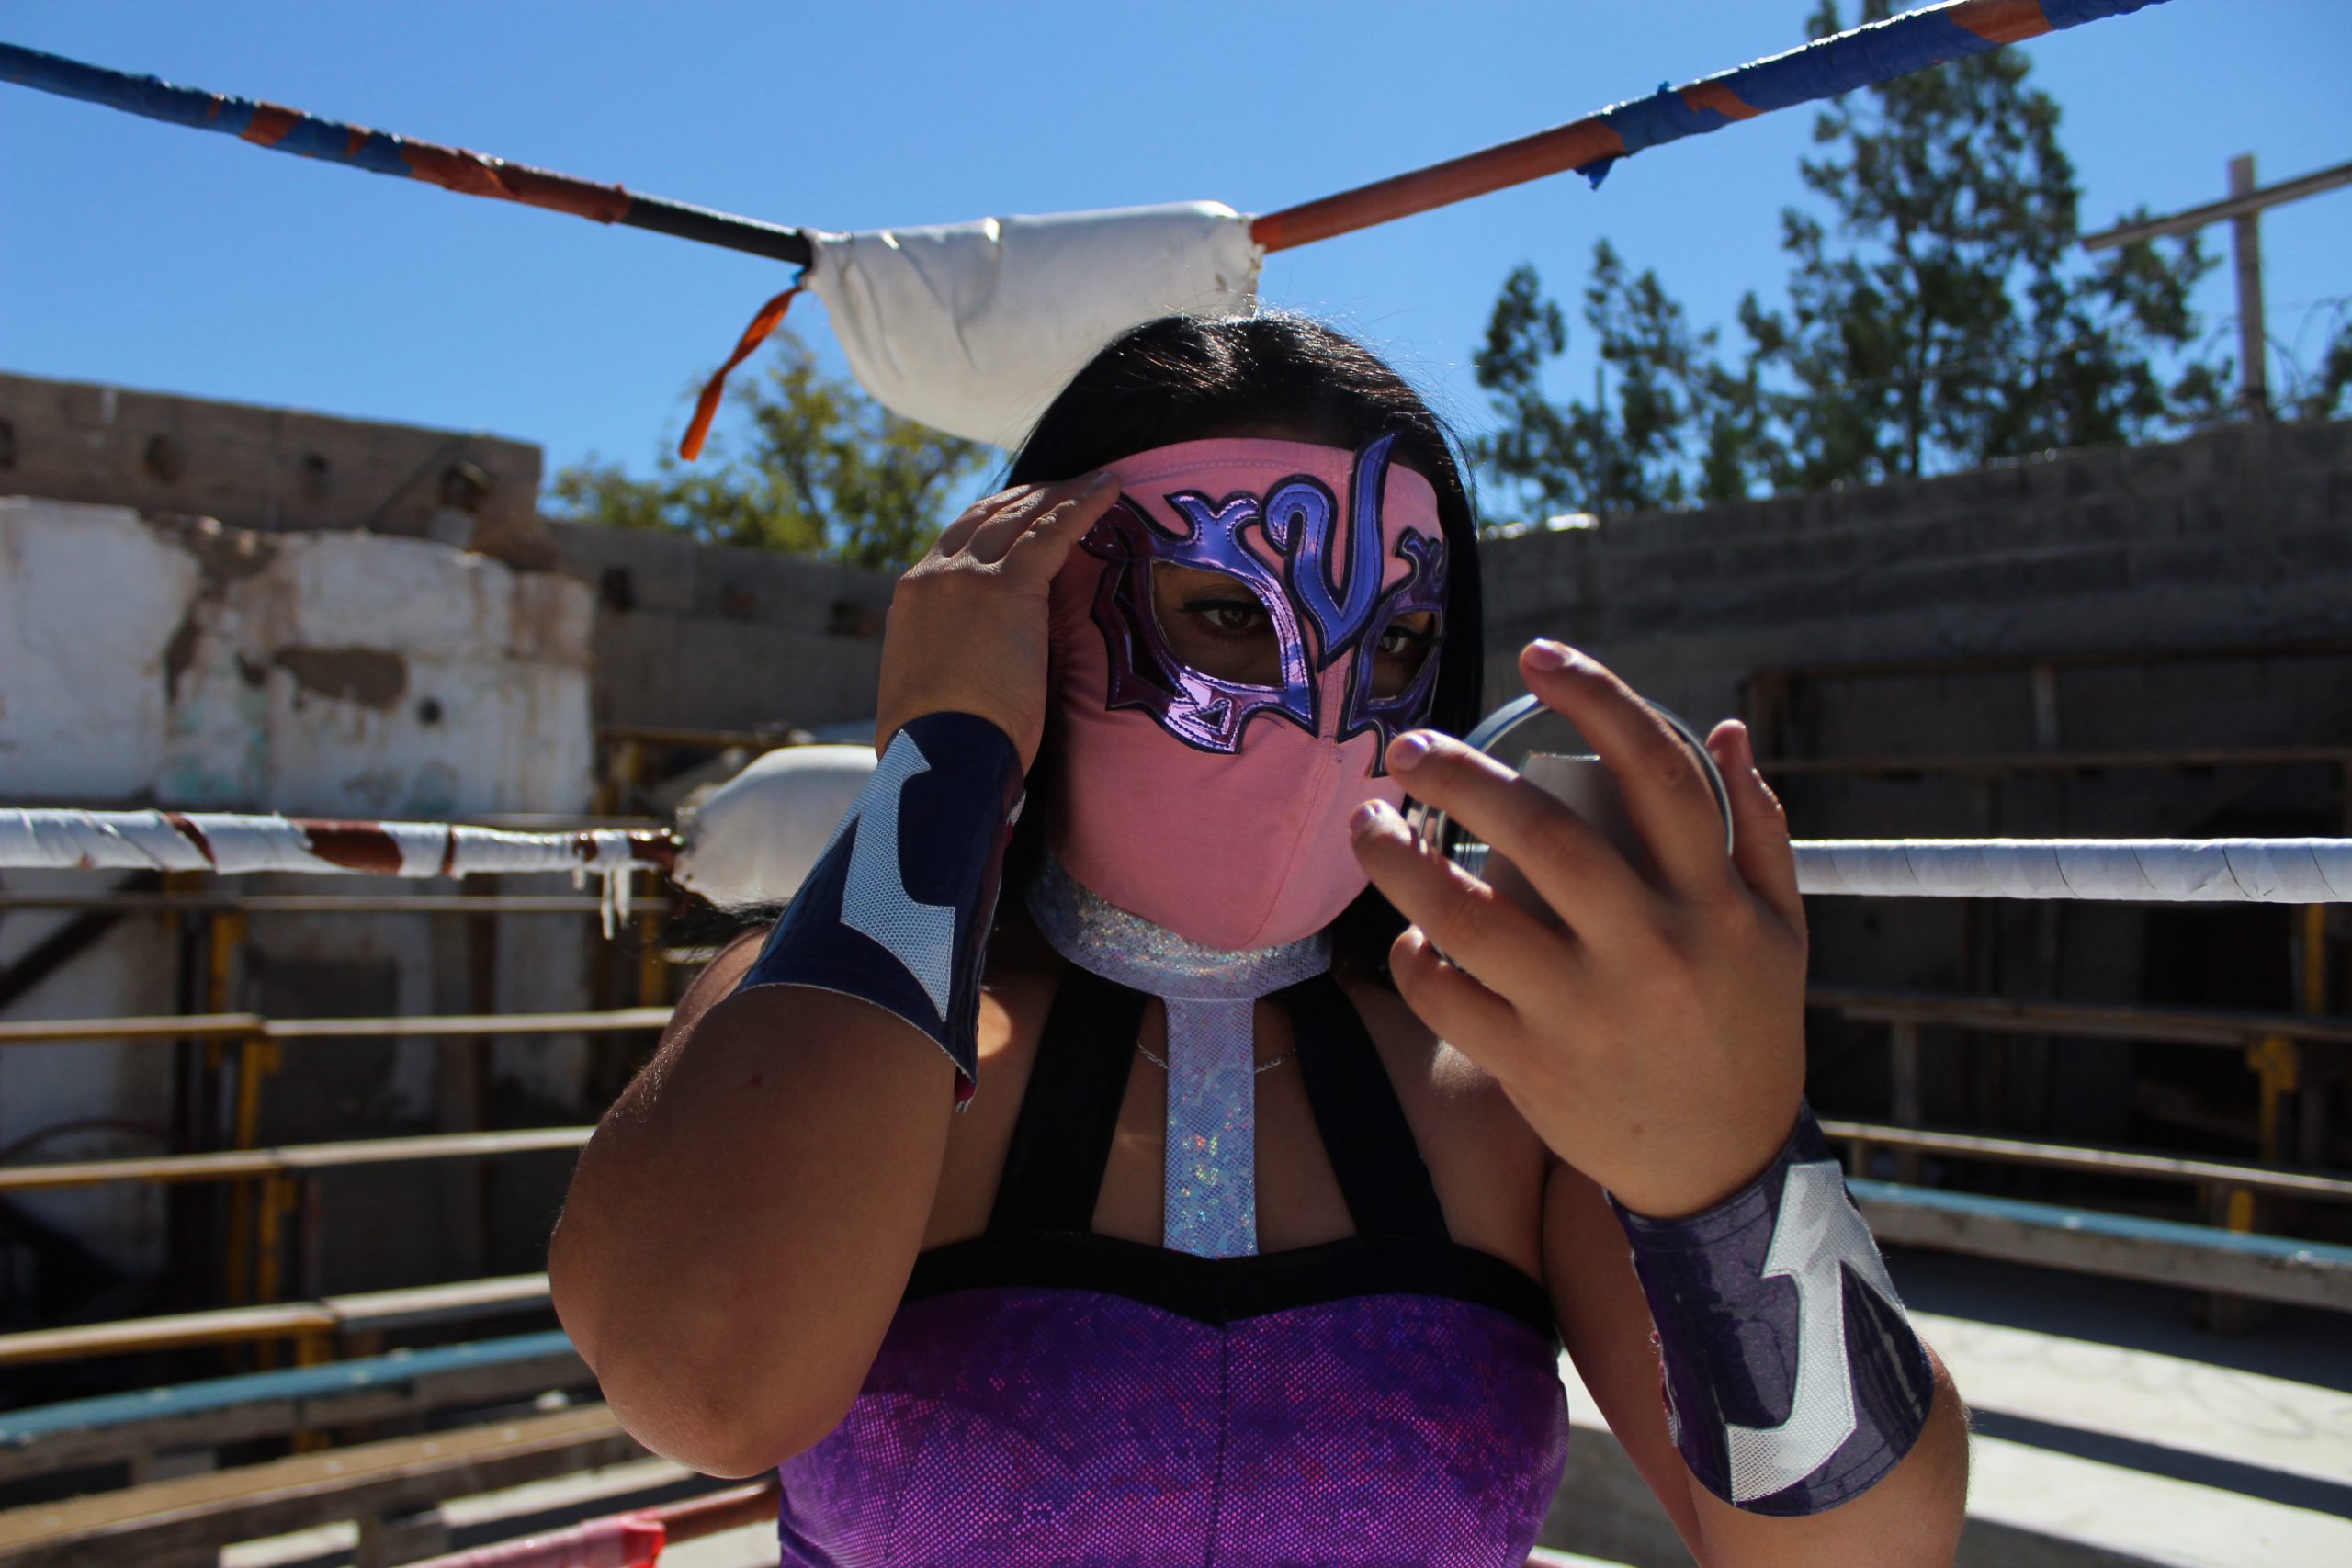 El día más difícil de Venus fue cuando perdió su máscara contra Lady Shani en una pelea de la AAA que fue transmitida en televisión. Foto: Ciela Ávila